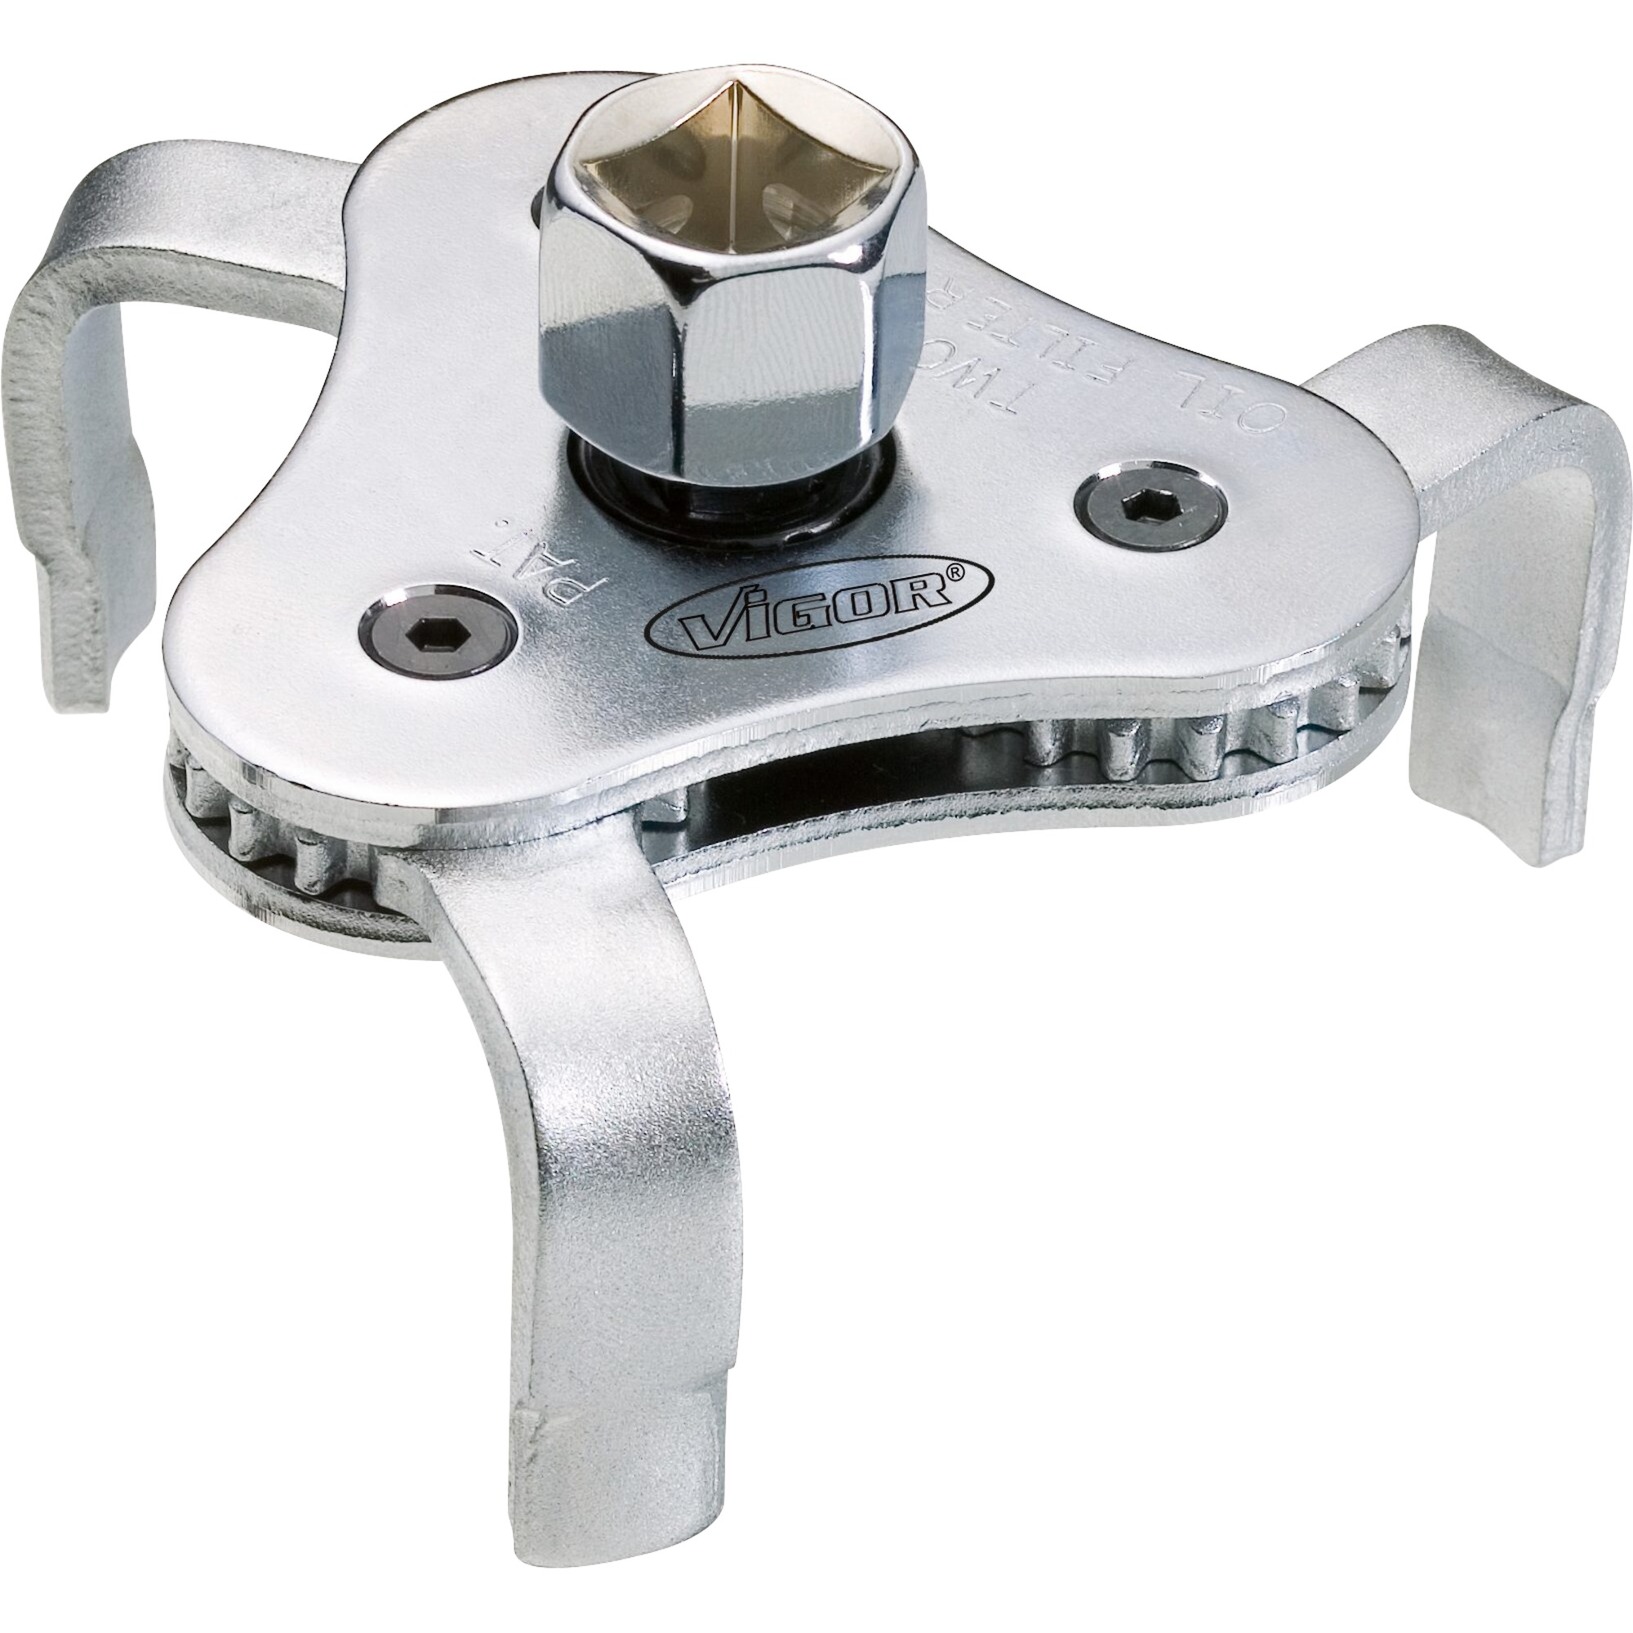 Image of Alternate - Ölfilterschlüssel / Ölfilterkralle V1281, 3-armig, Steckschlüssel online einkaufen bei Alternate